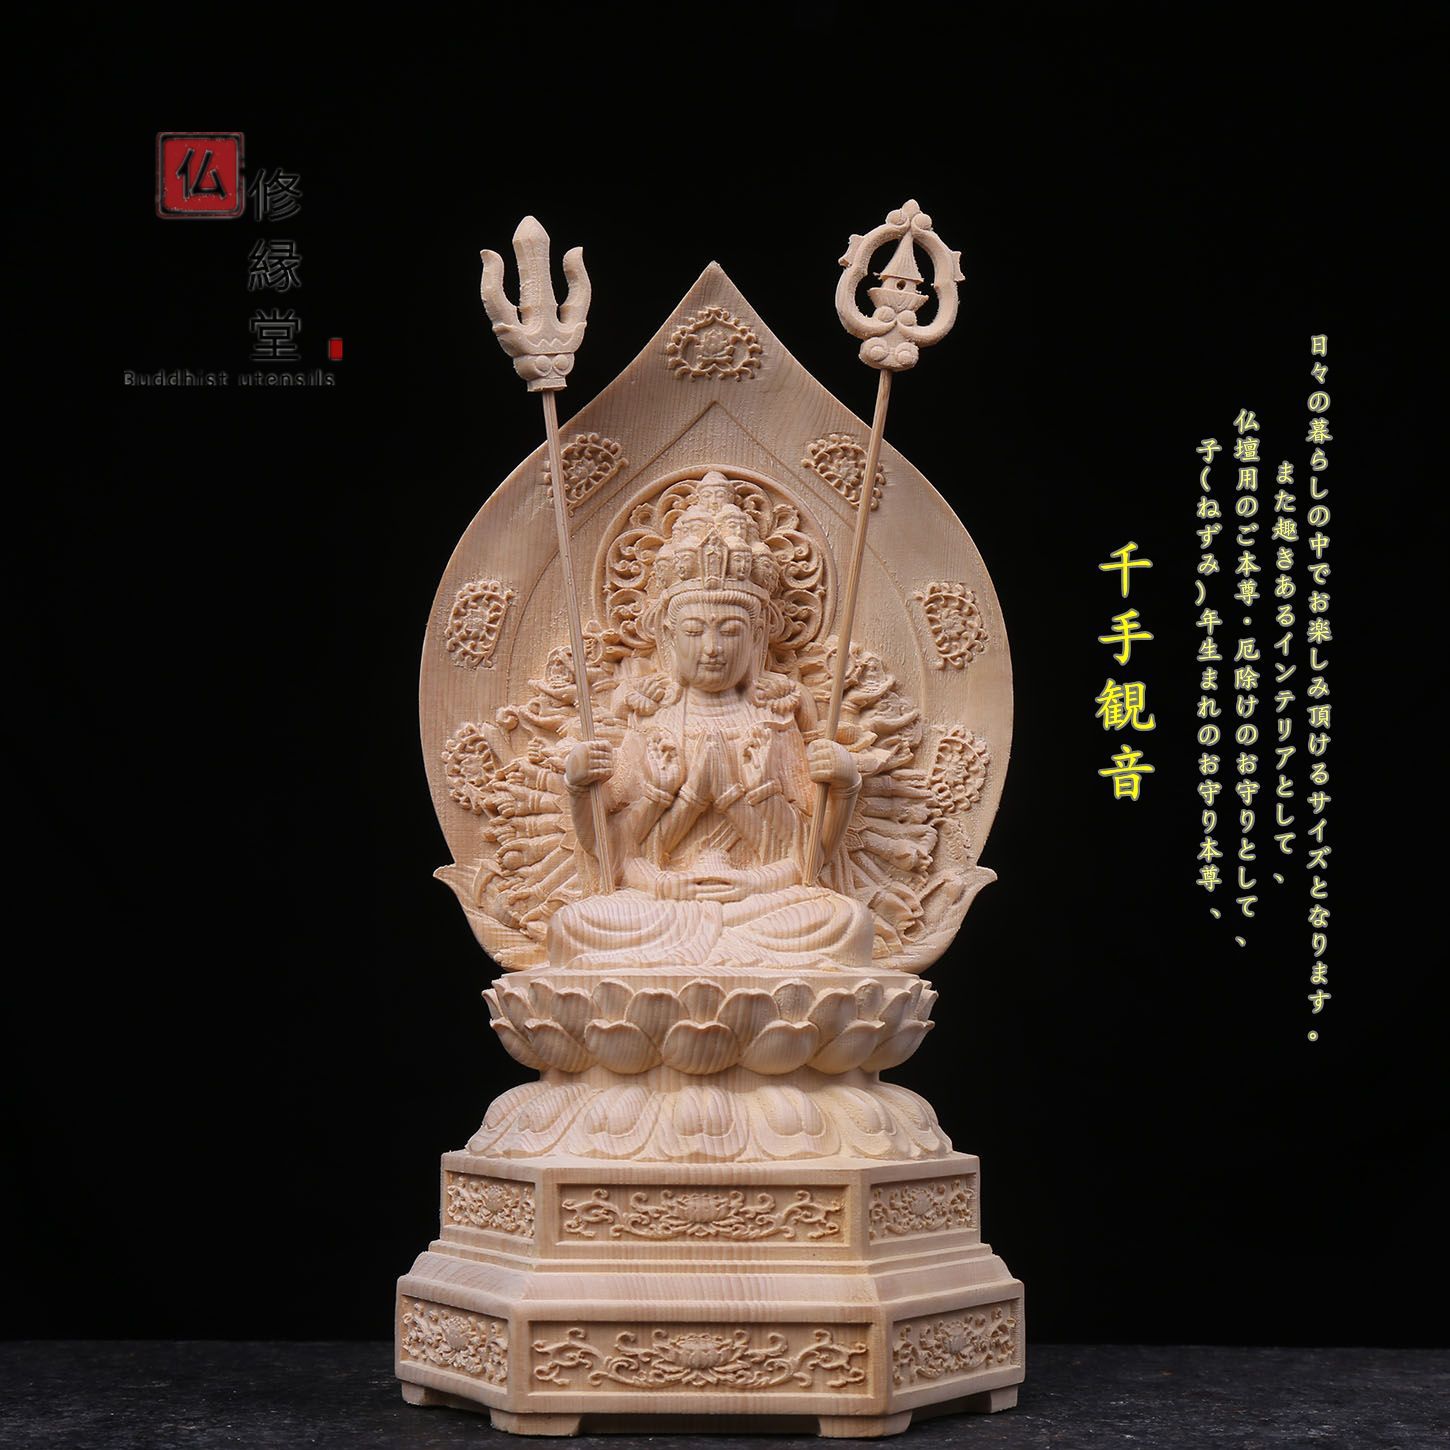 修縁堂】最高級 木彫仏像 観音菩薩座像 彫刻 一刀彫 天然木檜材 仏教 